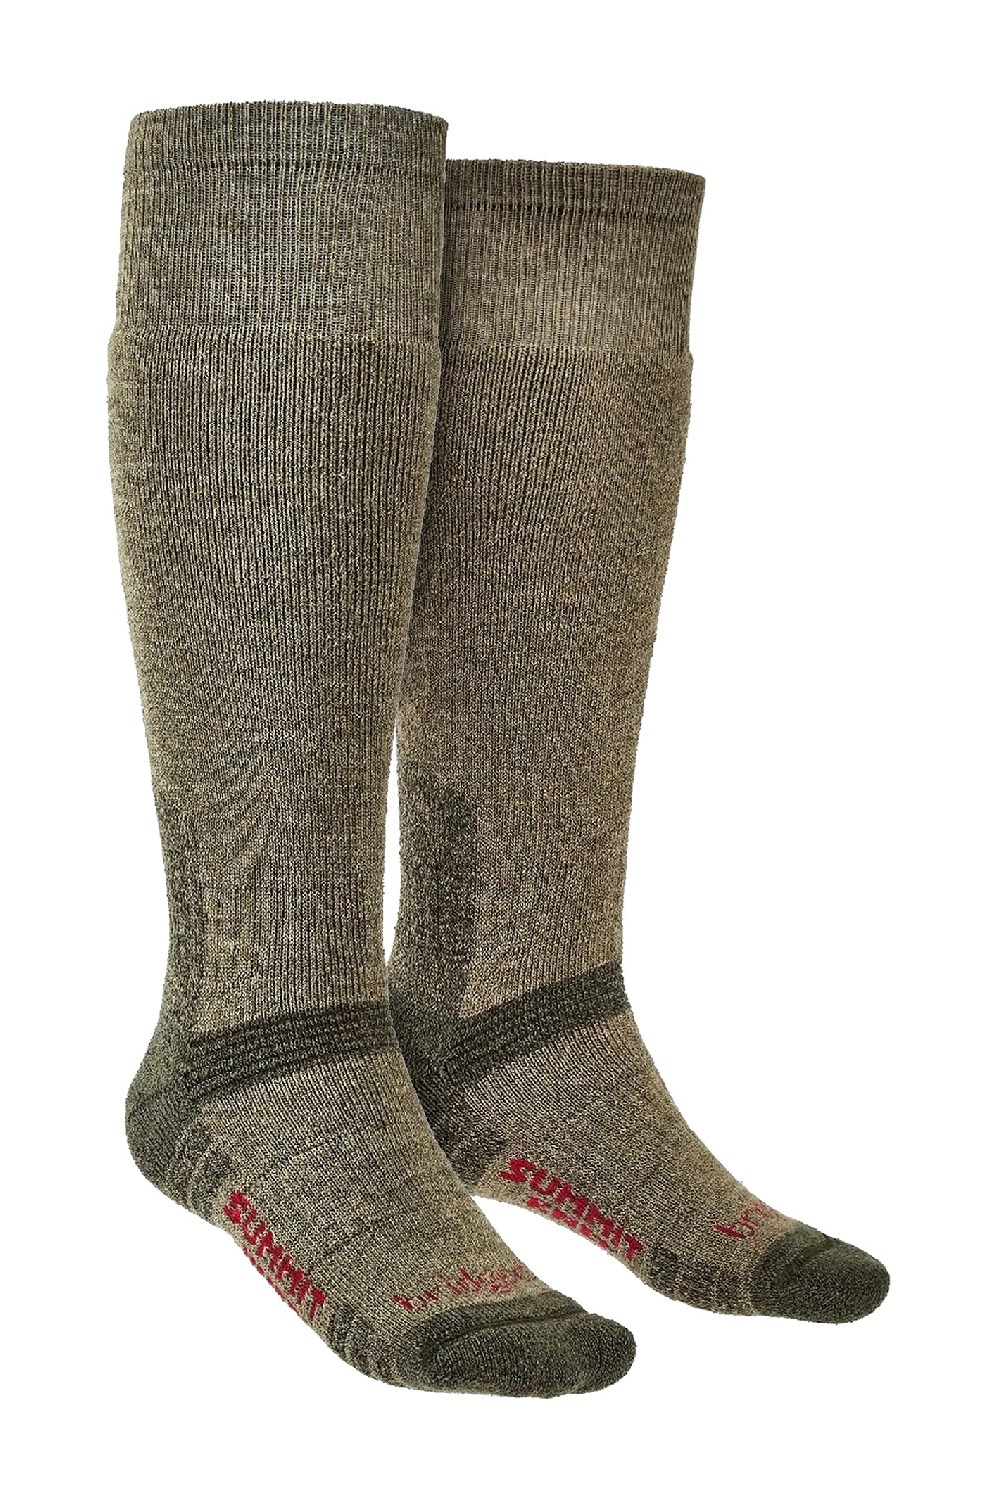 Mens Outdoor Merino Socks